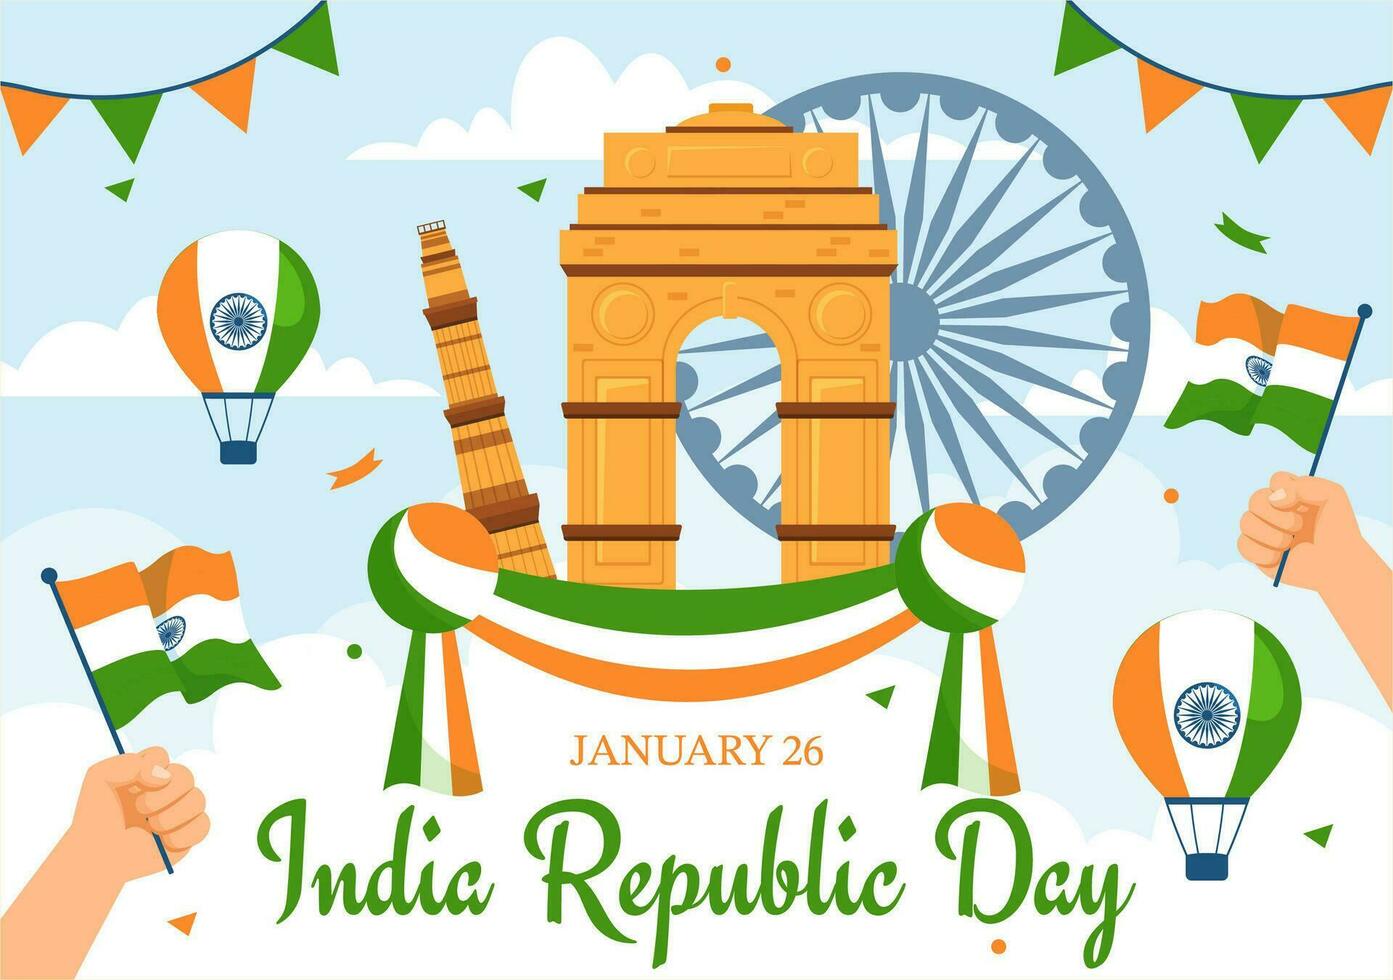 contento India república día vector ilustración en 26 enero con indio bandera y portón en fiesta nacional celebracion plano dibujos animados antecedentes diseño